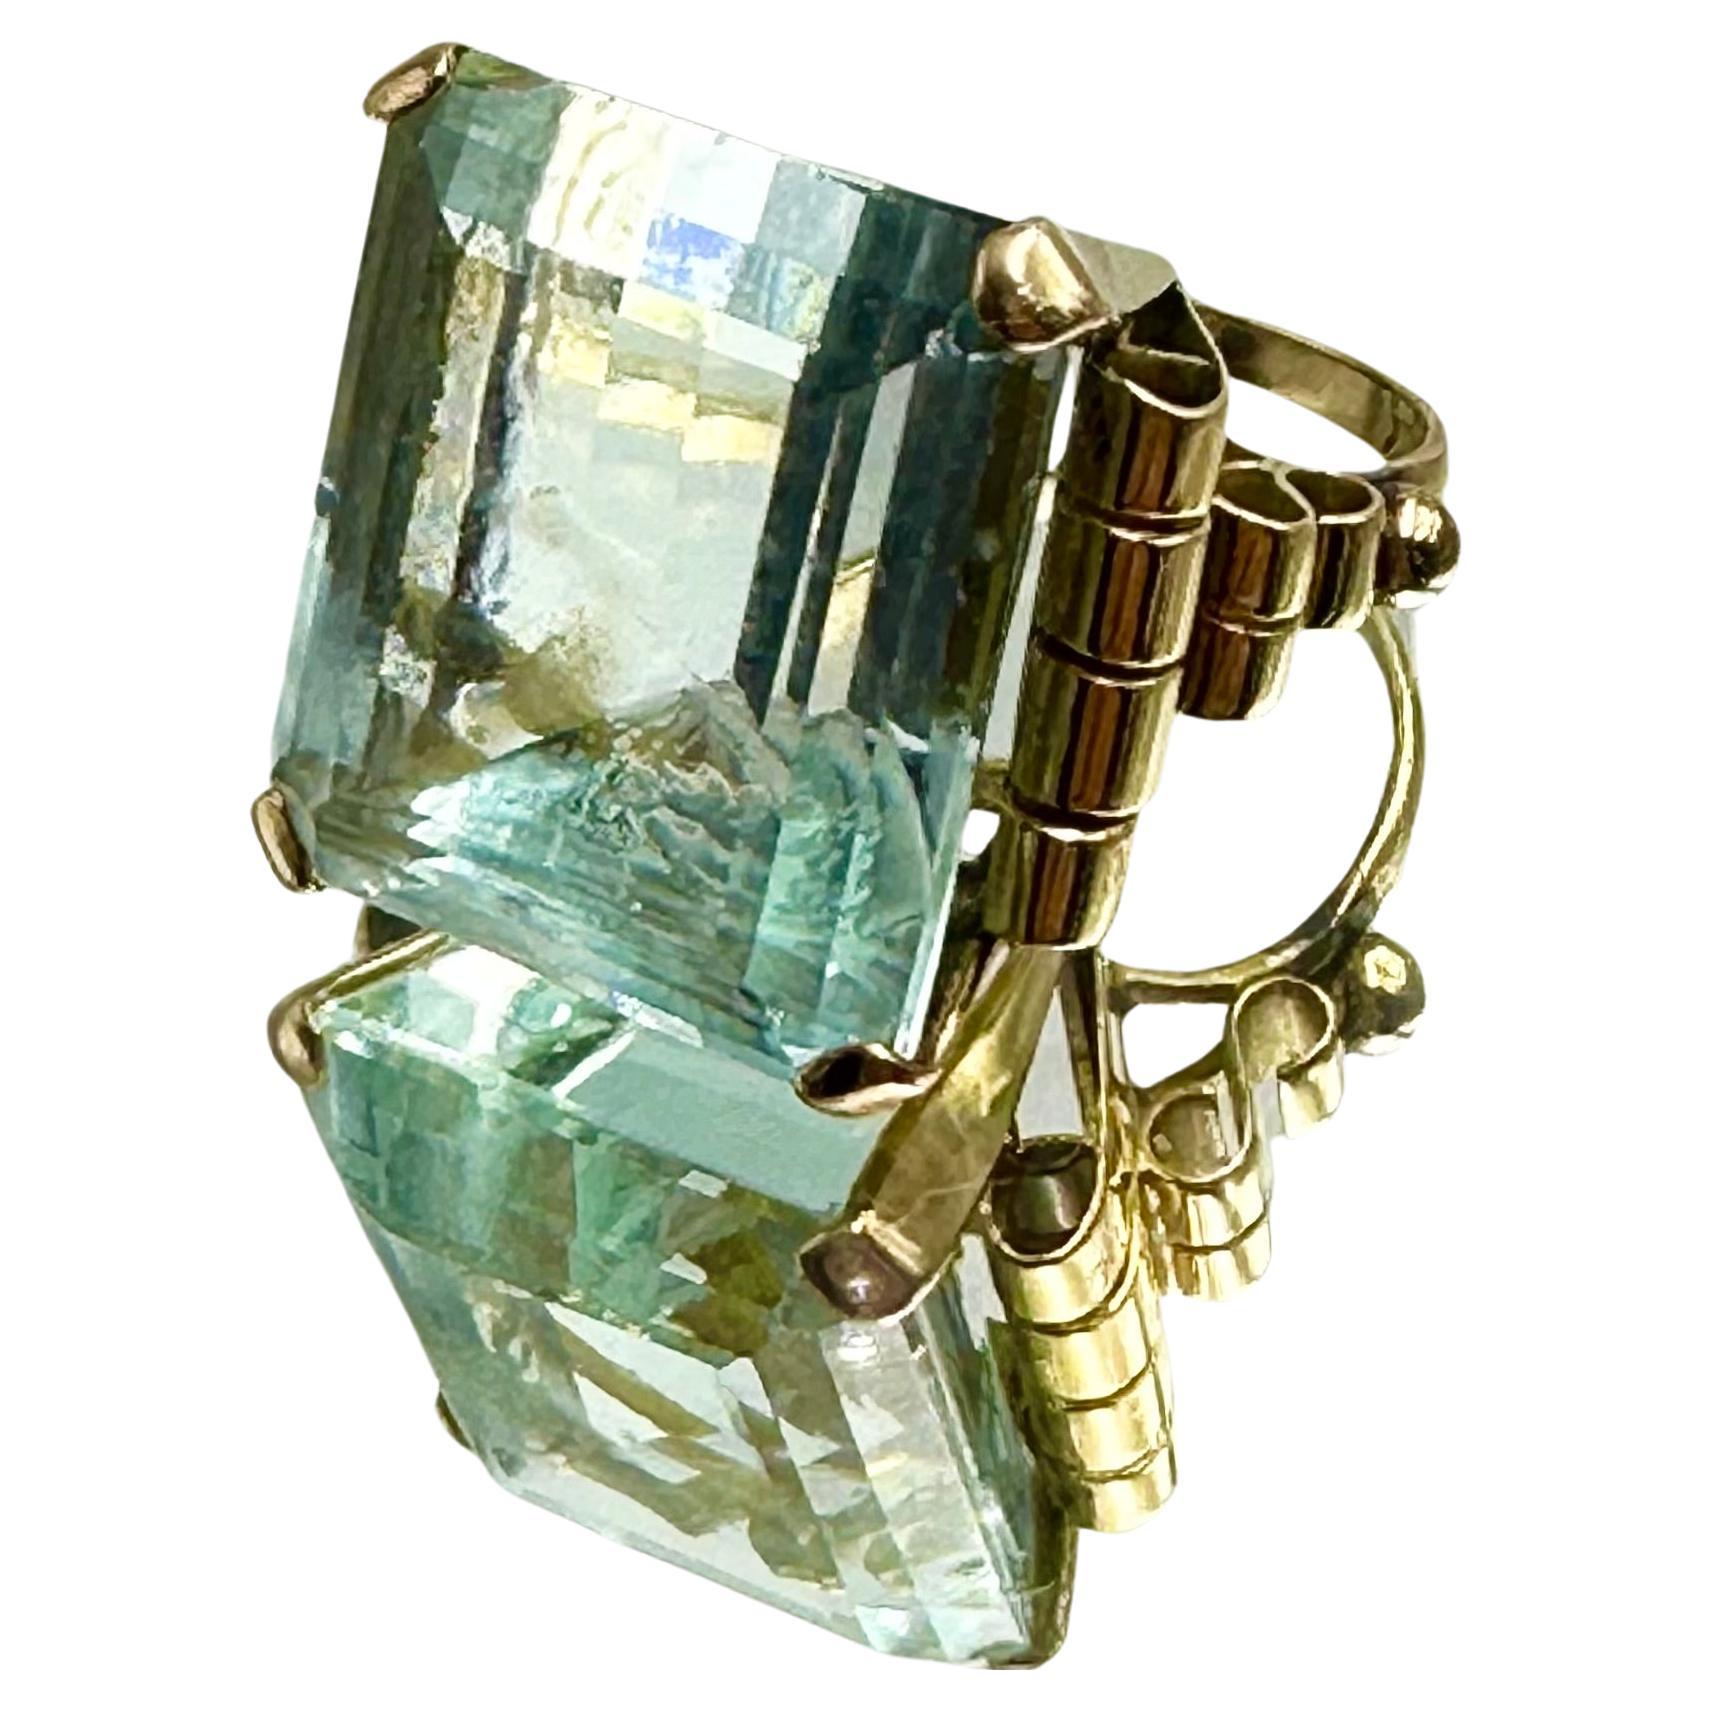 Grande anello con acquamarina (35 ct.), taglio smeraldo, di colore azzurro intenso.
Raffinata montatura in oro rosa 18 carati, in stile art decò.
Prodotto artigianalmente in Italia, 1940 circa.

